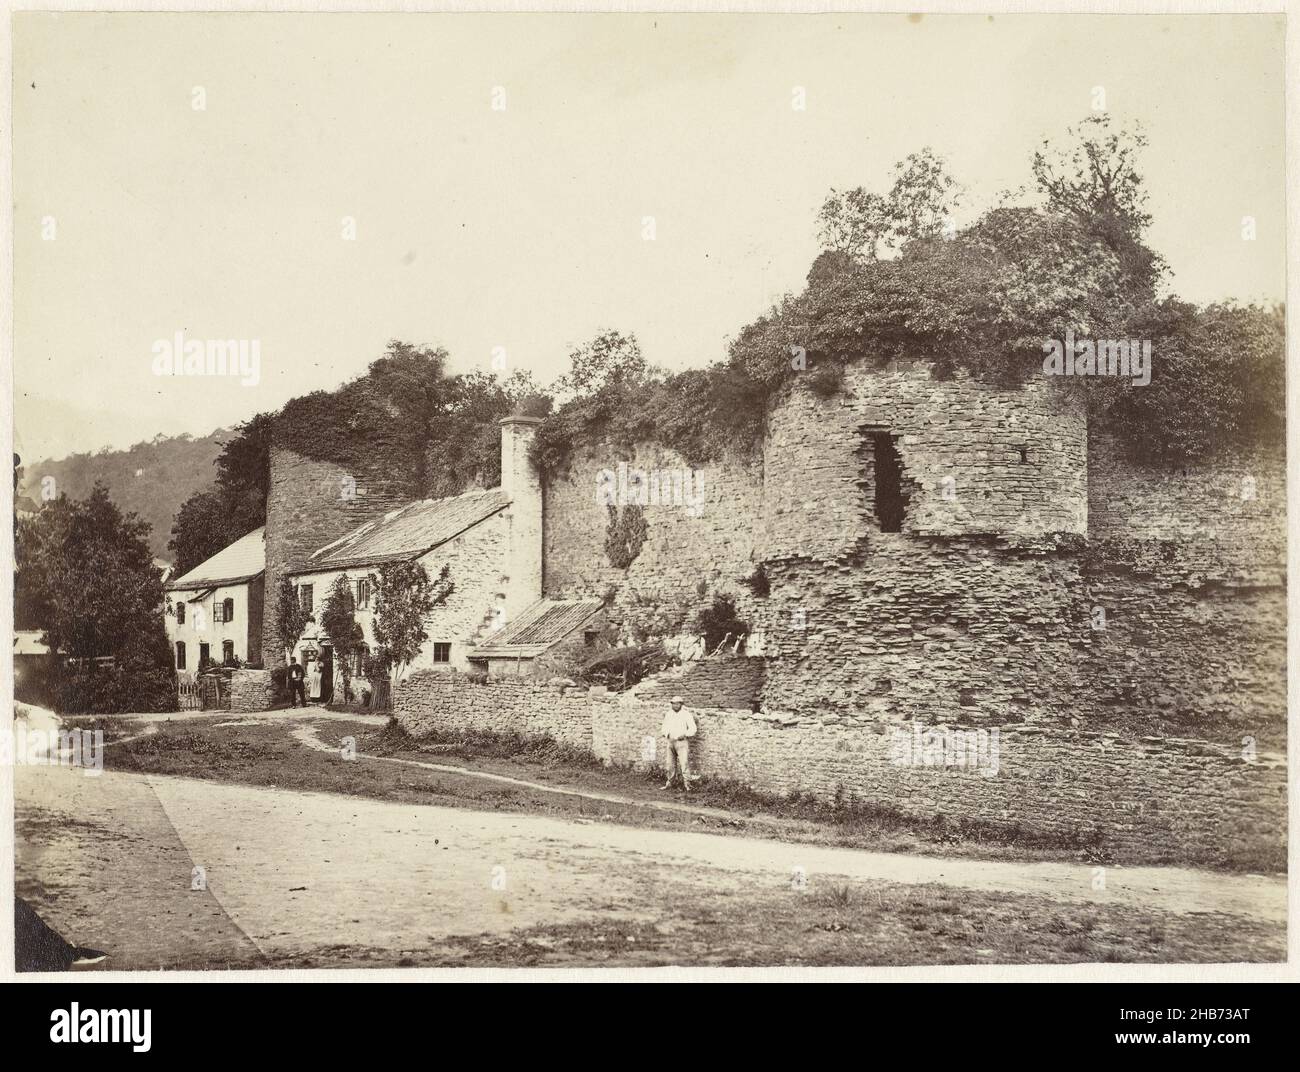 Ansicht einer zerstörten Stadtmauer mit anliegenden Häusern, anonym, Großbritannien, 1855 - 1865, Papier, Albumin-Print, Höhe 155 mm × Breite 206 mm Stockfoto